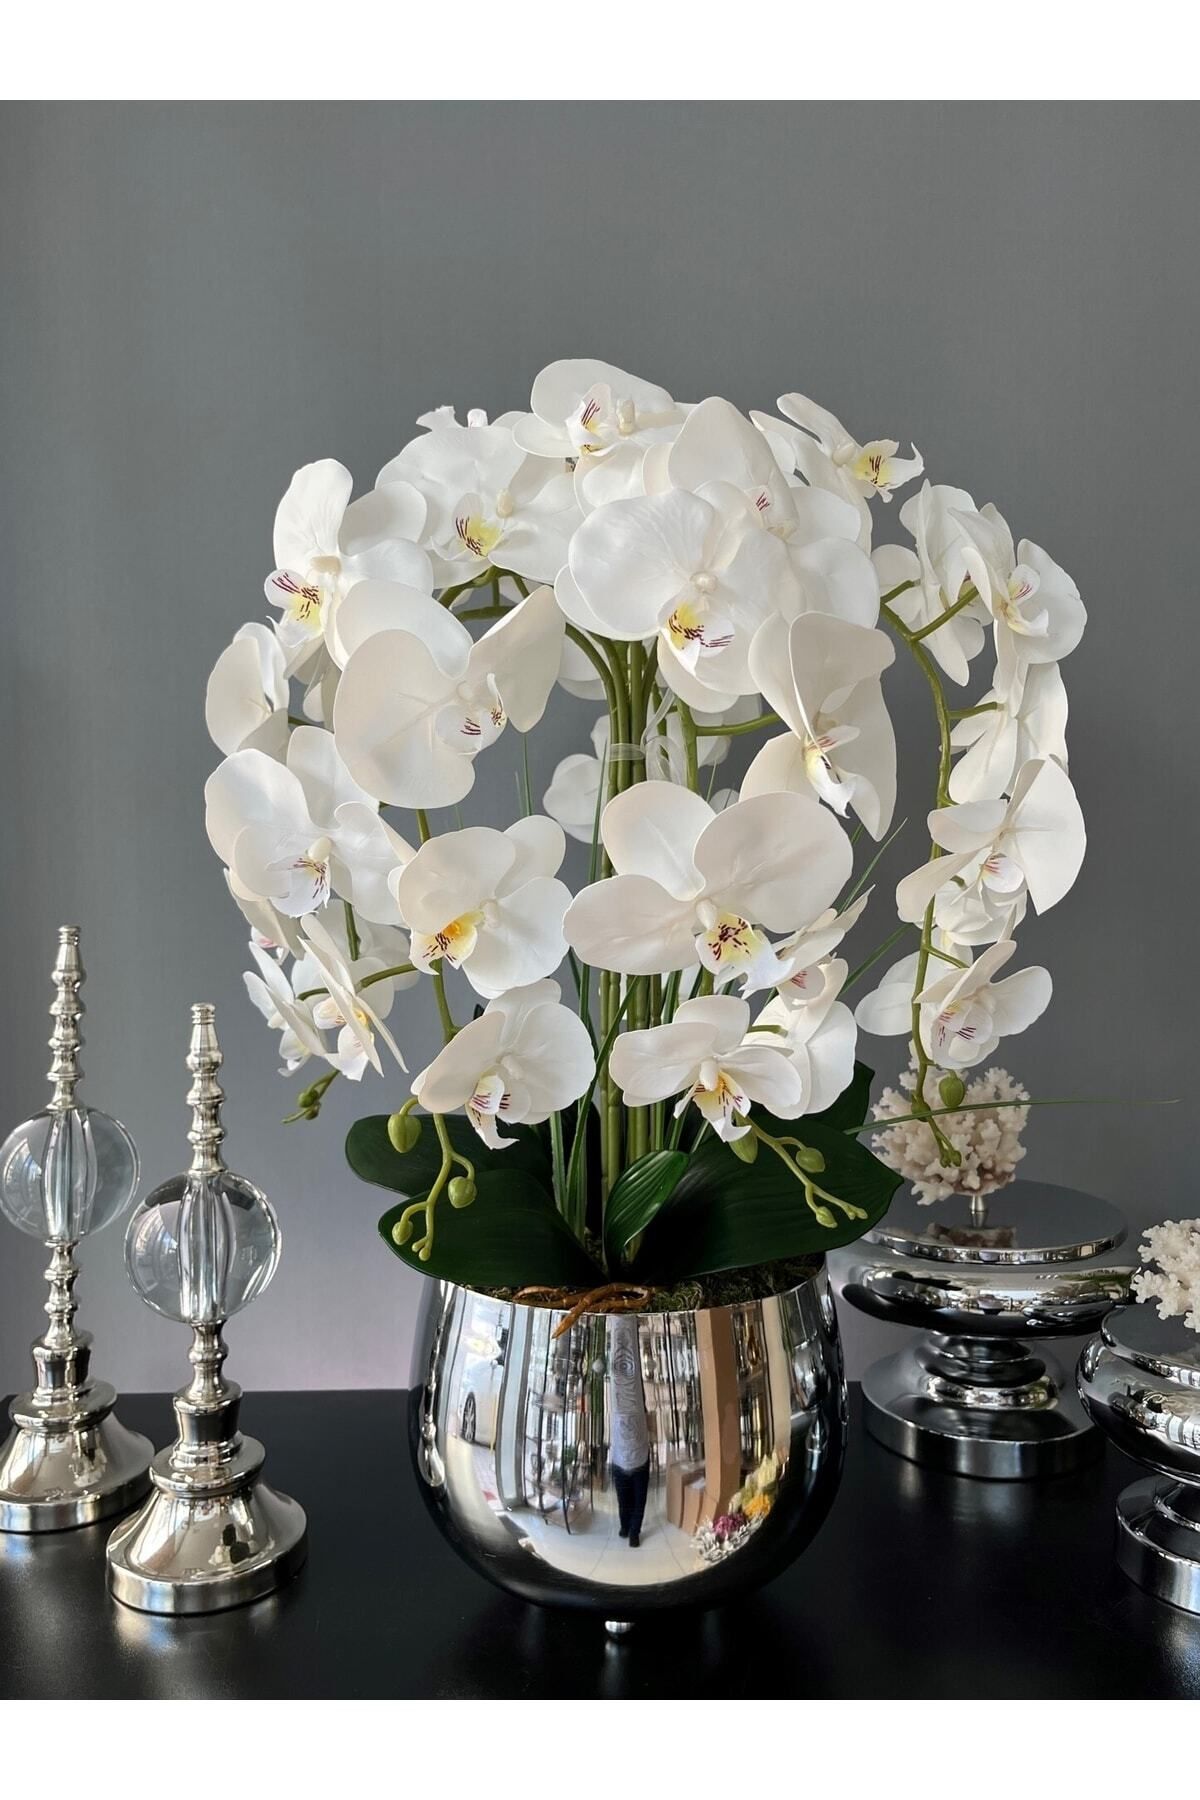 LİLOTEHOME 5 Dal Luxury Islak Beyaz Orkide Aranjman Japon Model Gümüş Renk Saksı